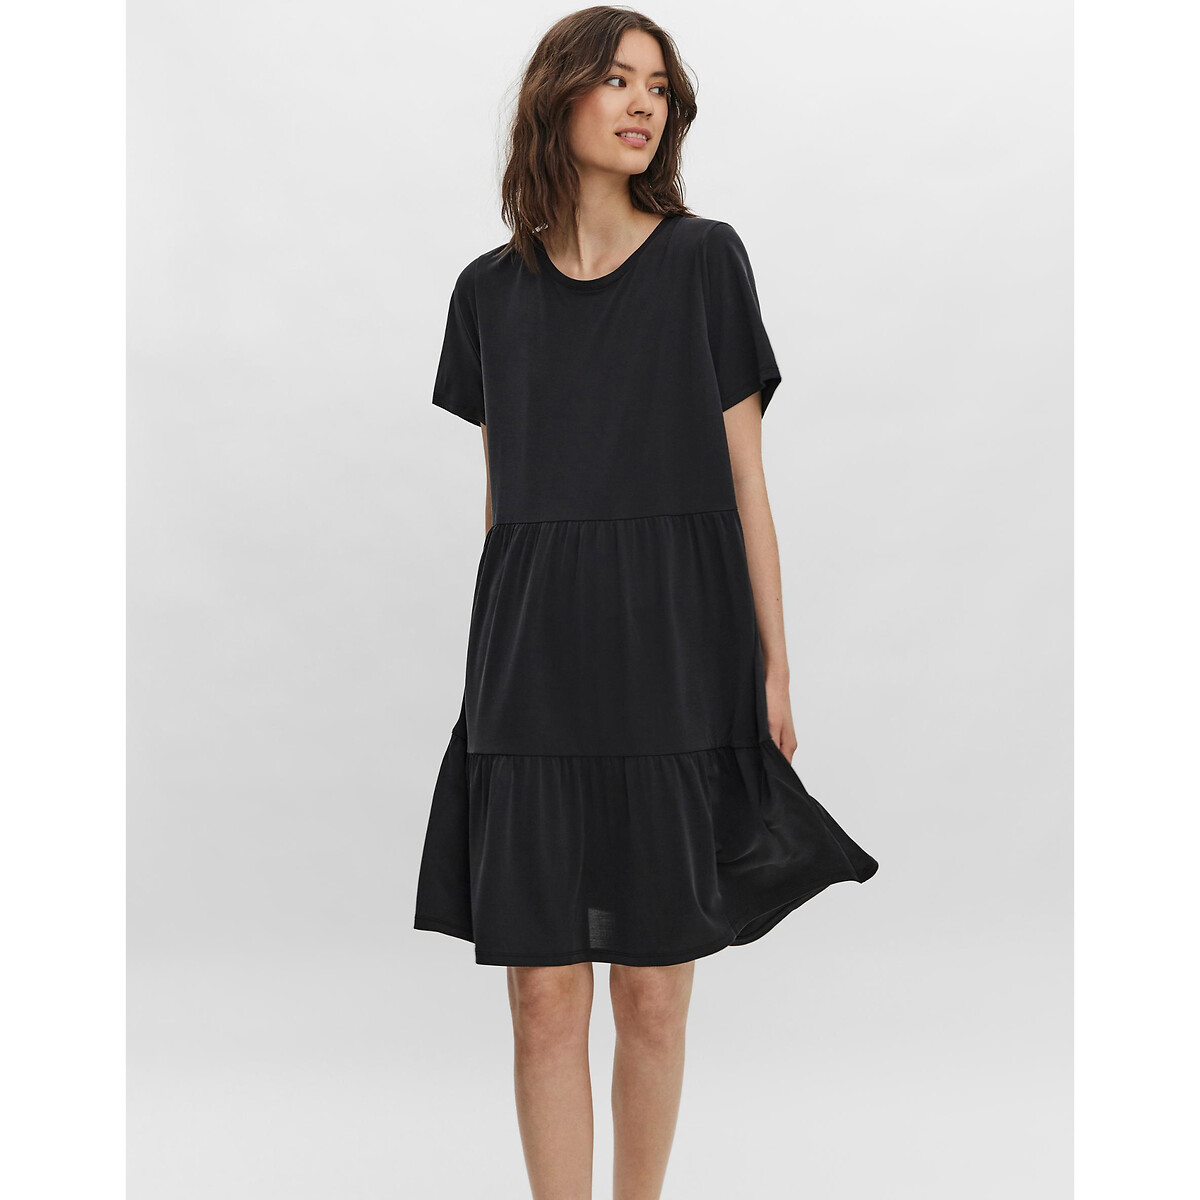 Платье Расклешенное с короткими рукавами XS черный